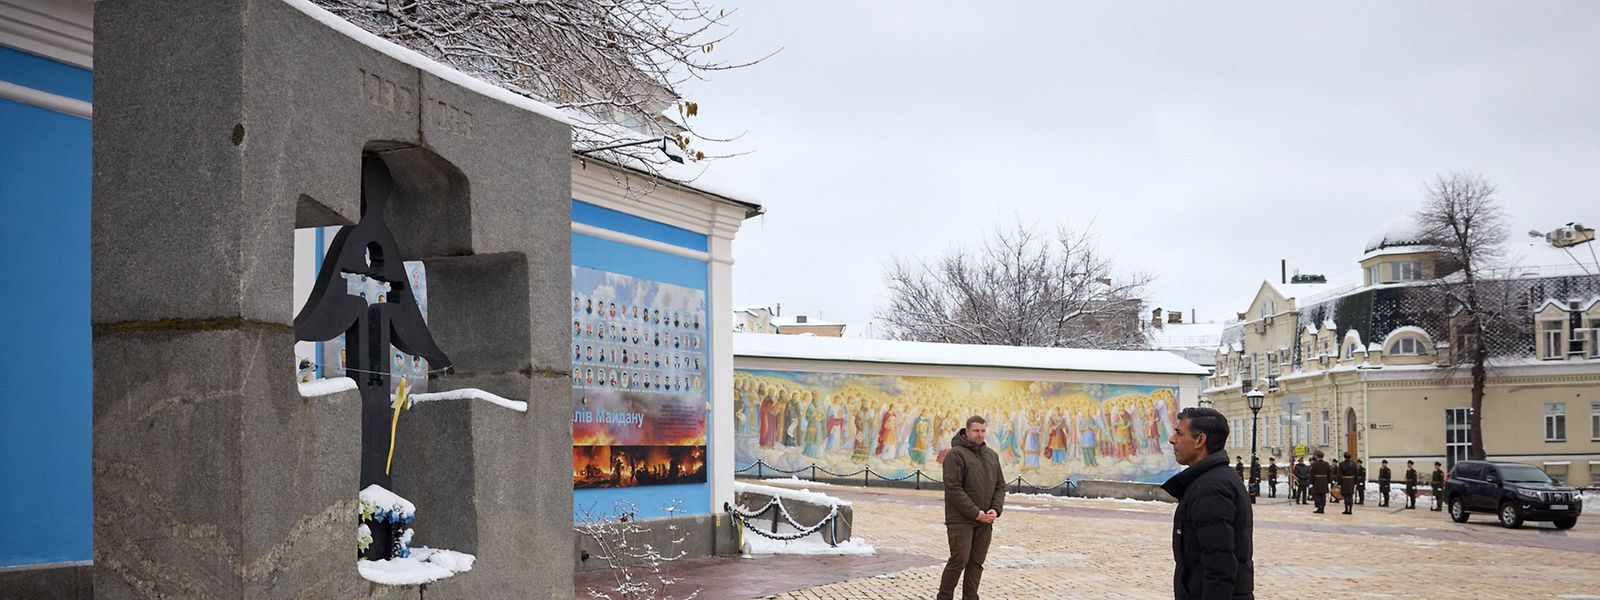 Monumento ucraniano em homenagem às vítimas do Holodomor.